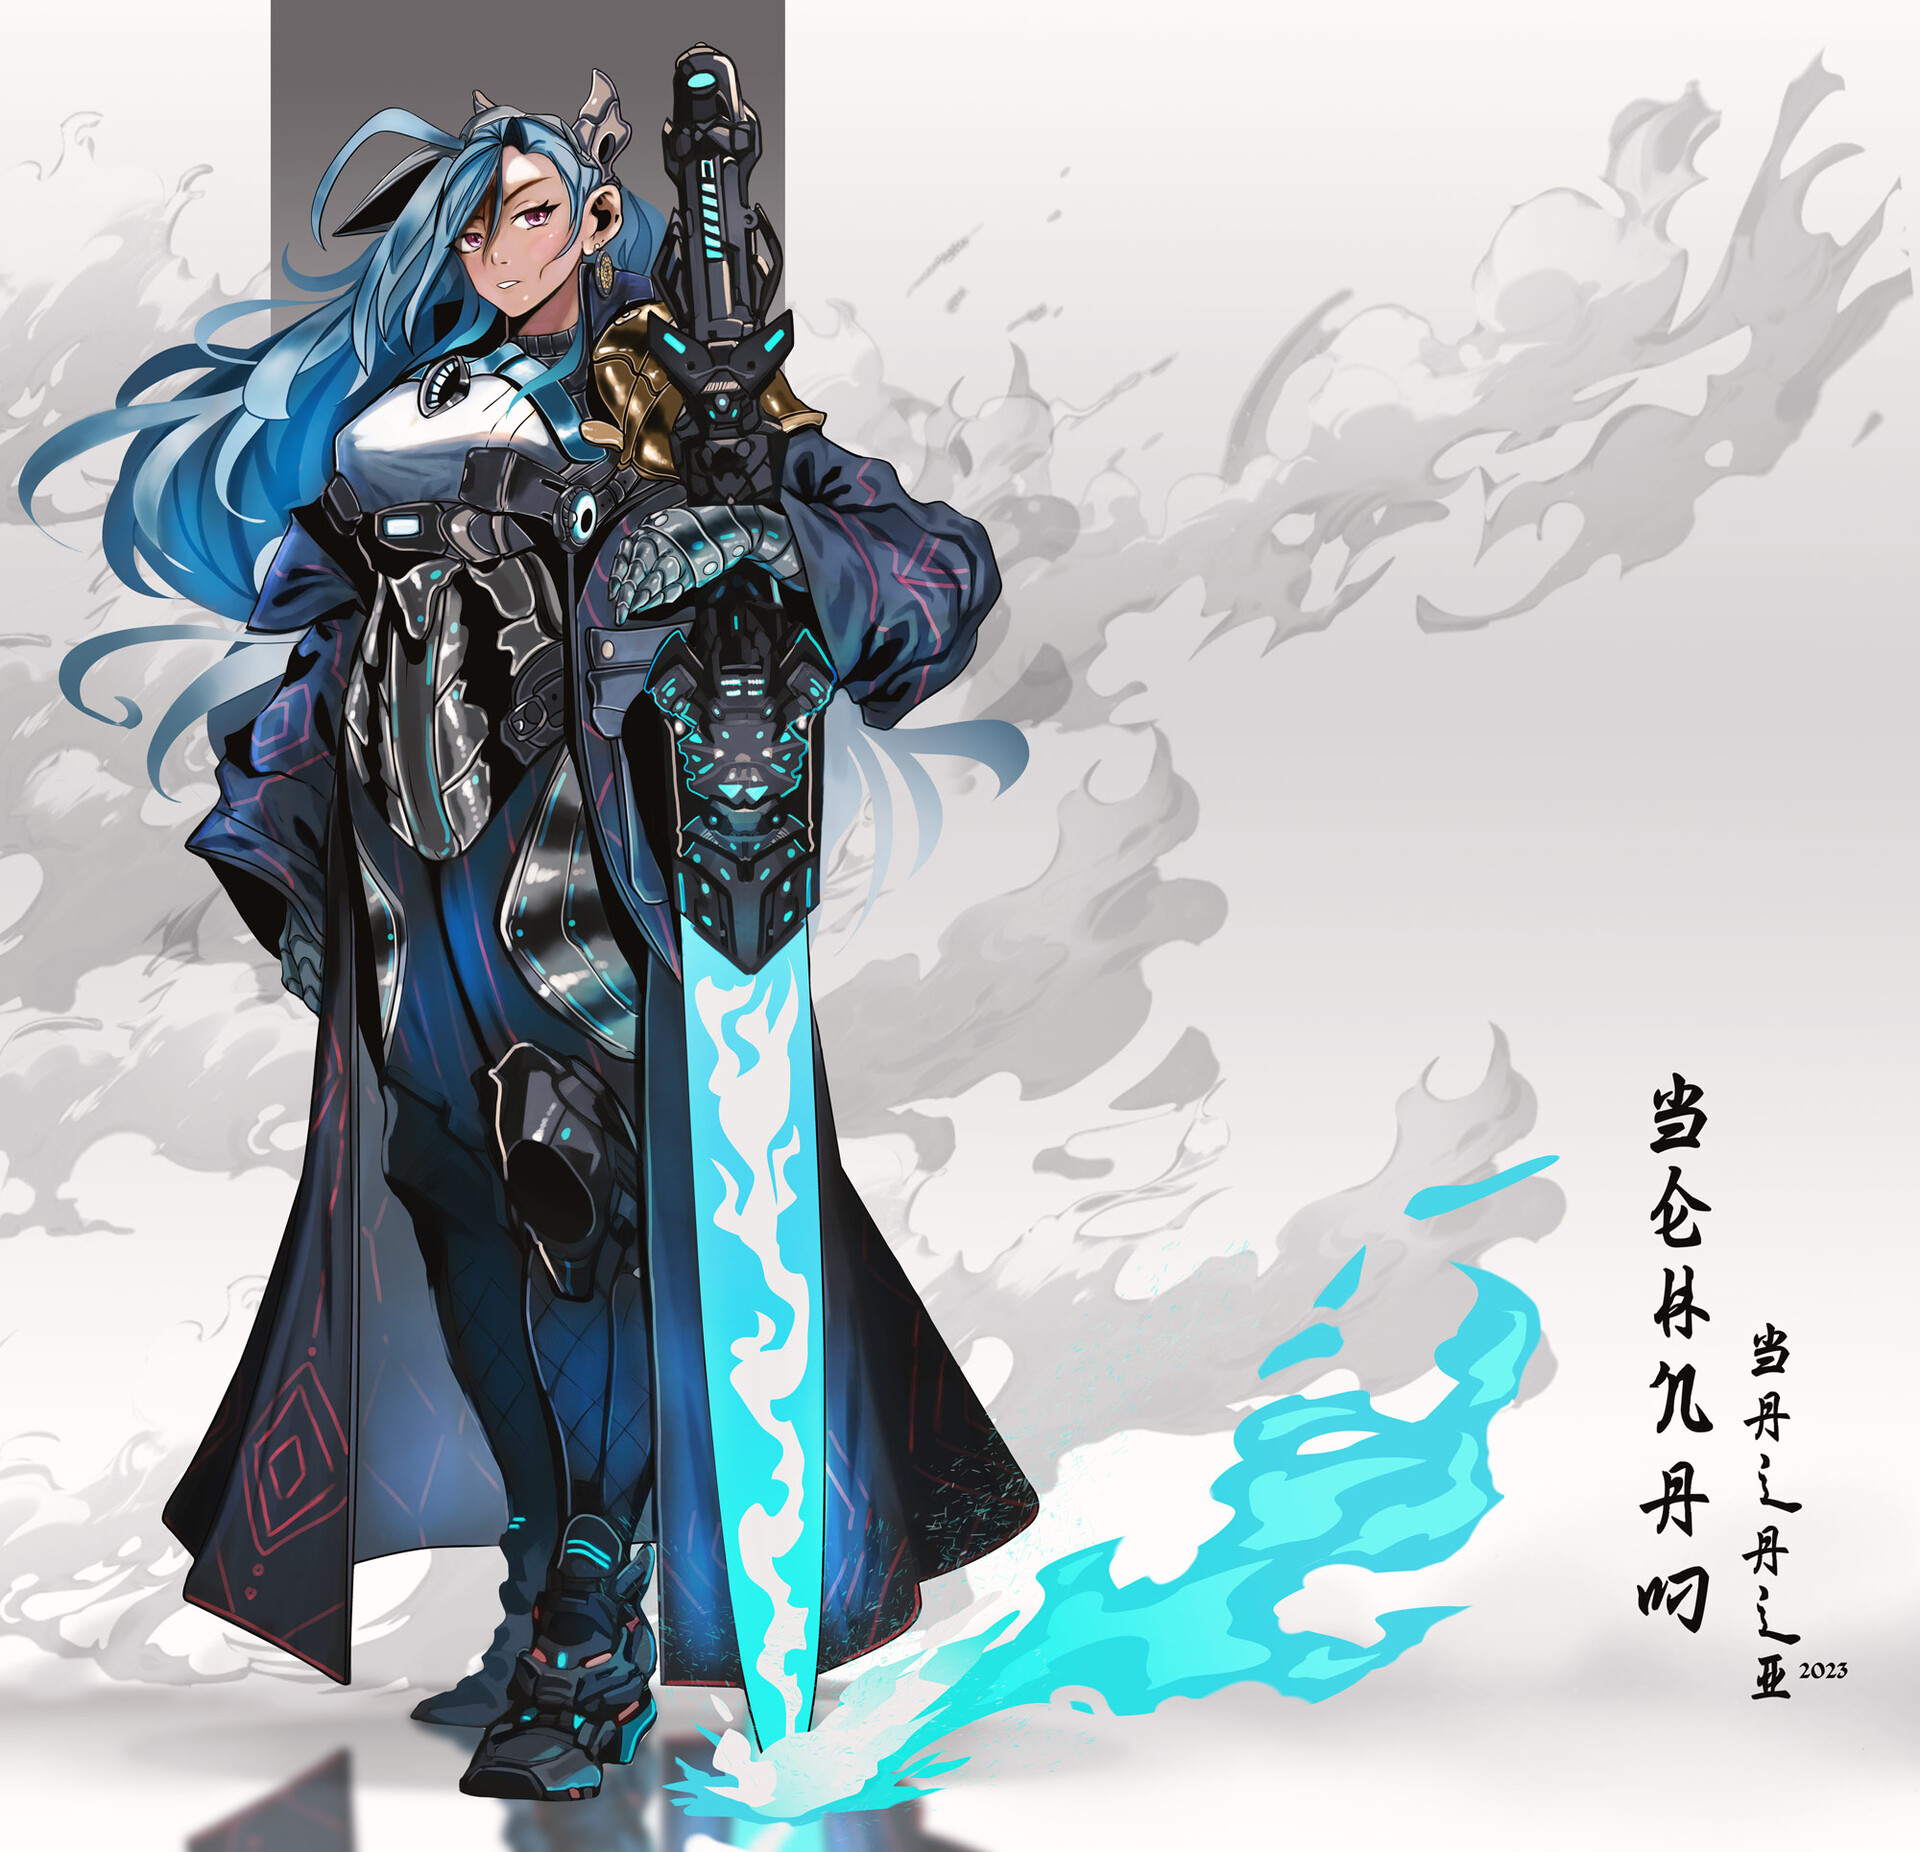 ArtStation - female warrior character